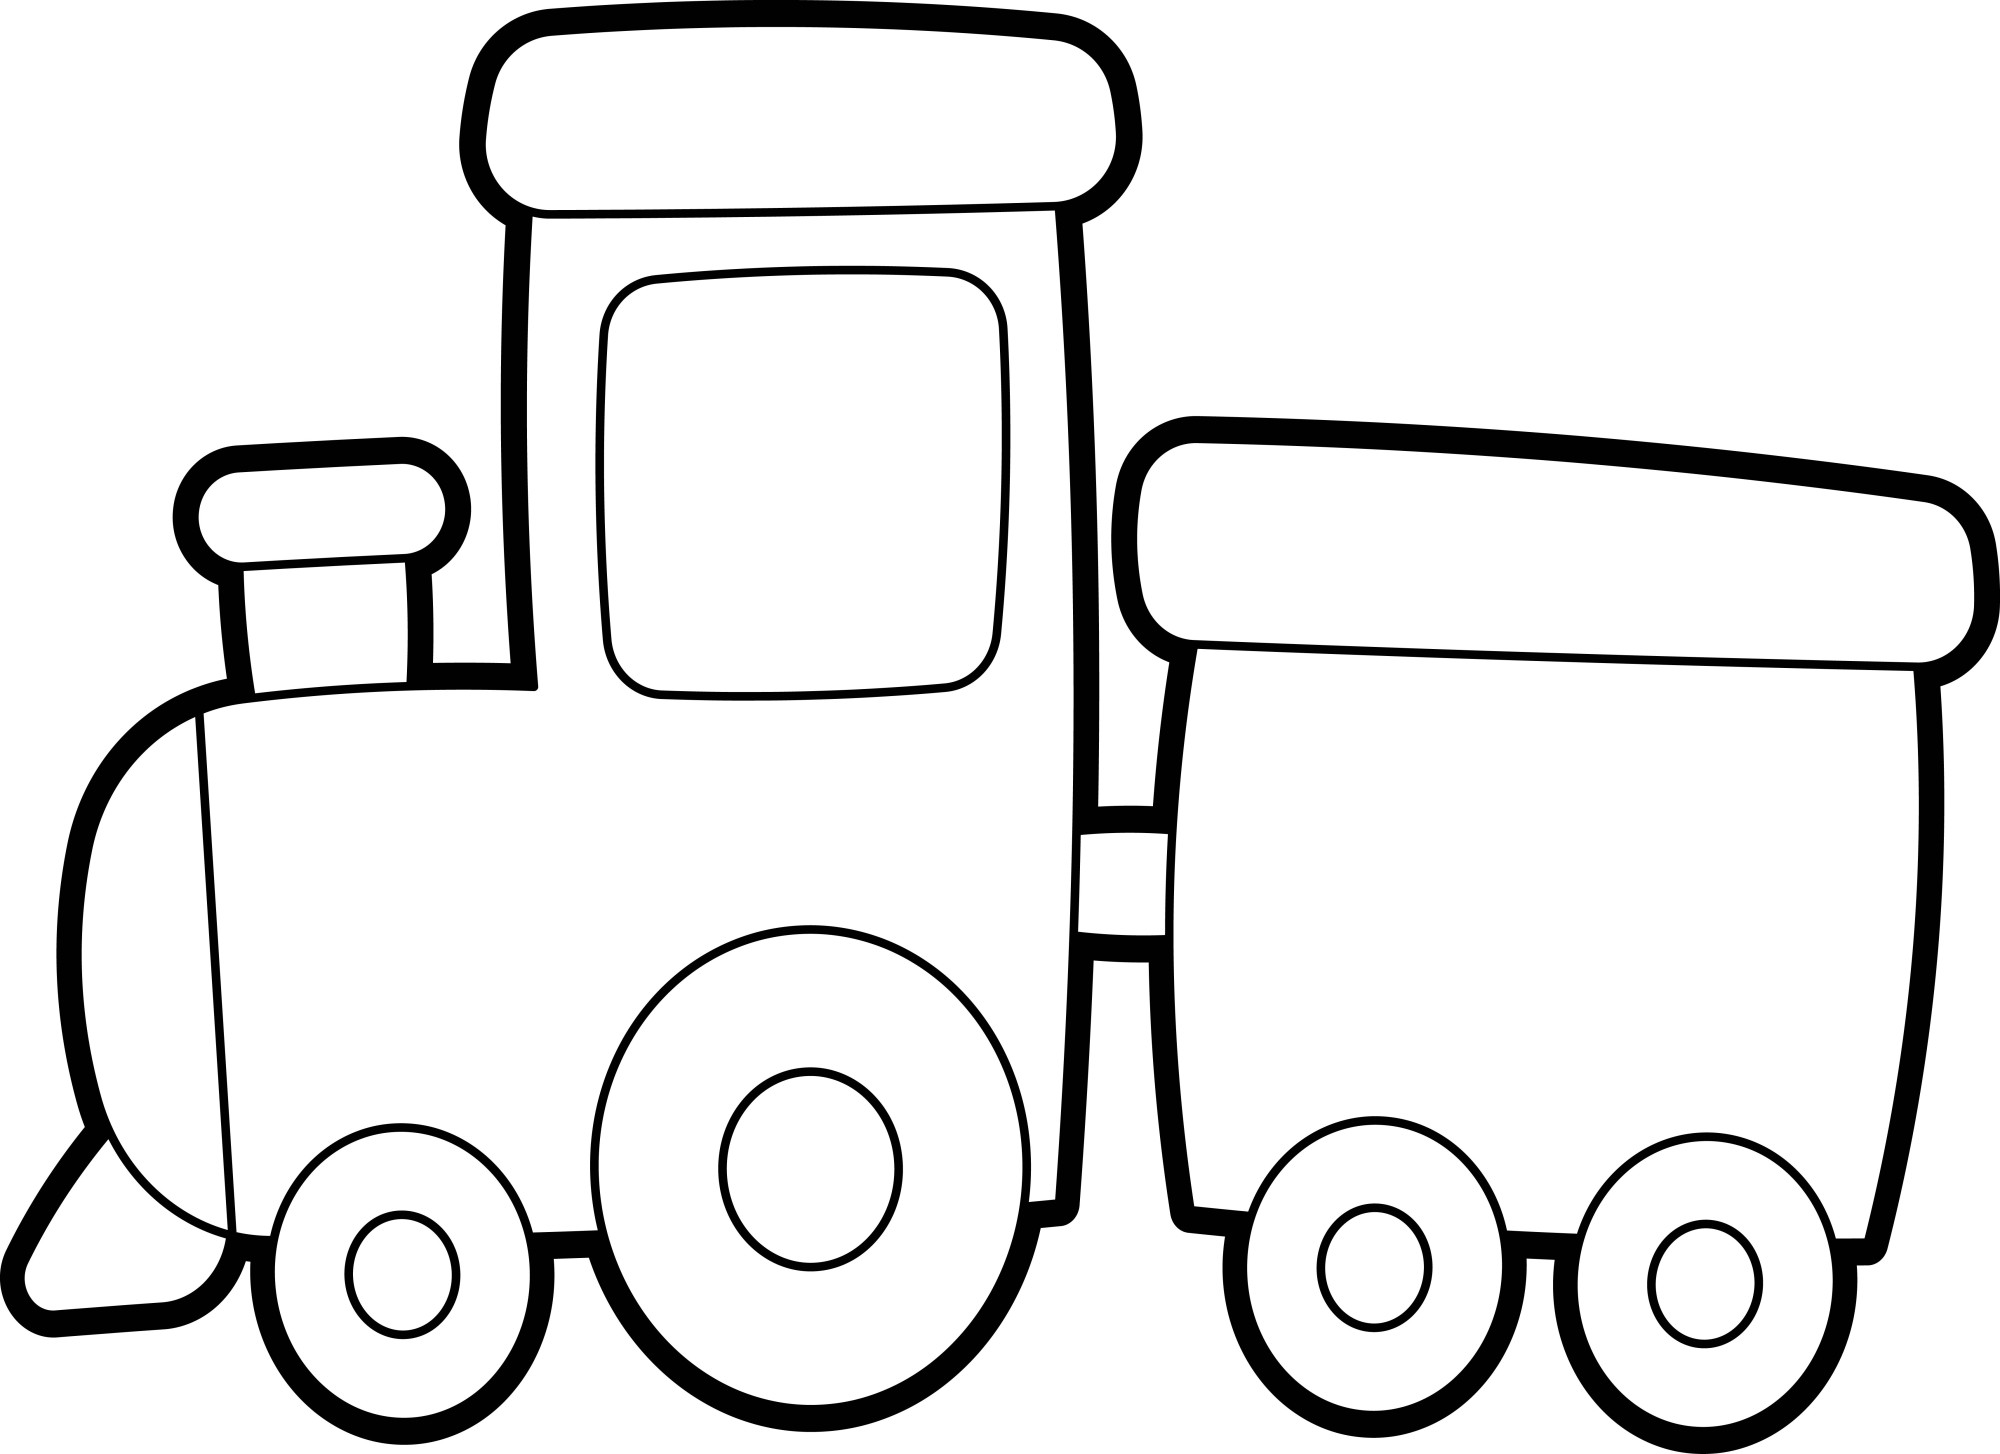 Раскраска для детей: детский поезд с маленьким вагончиком